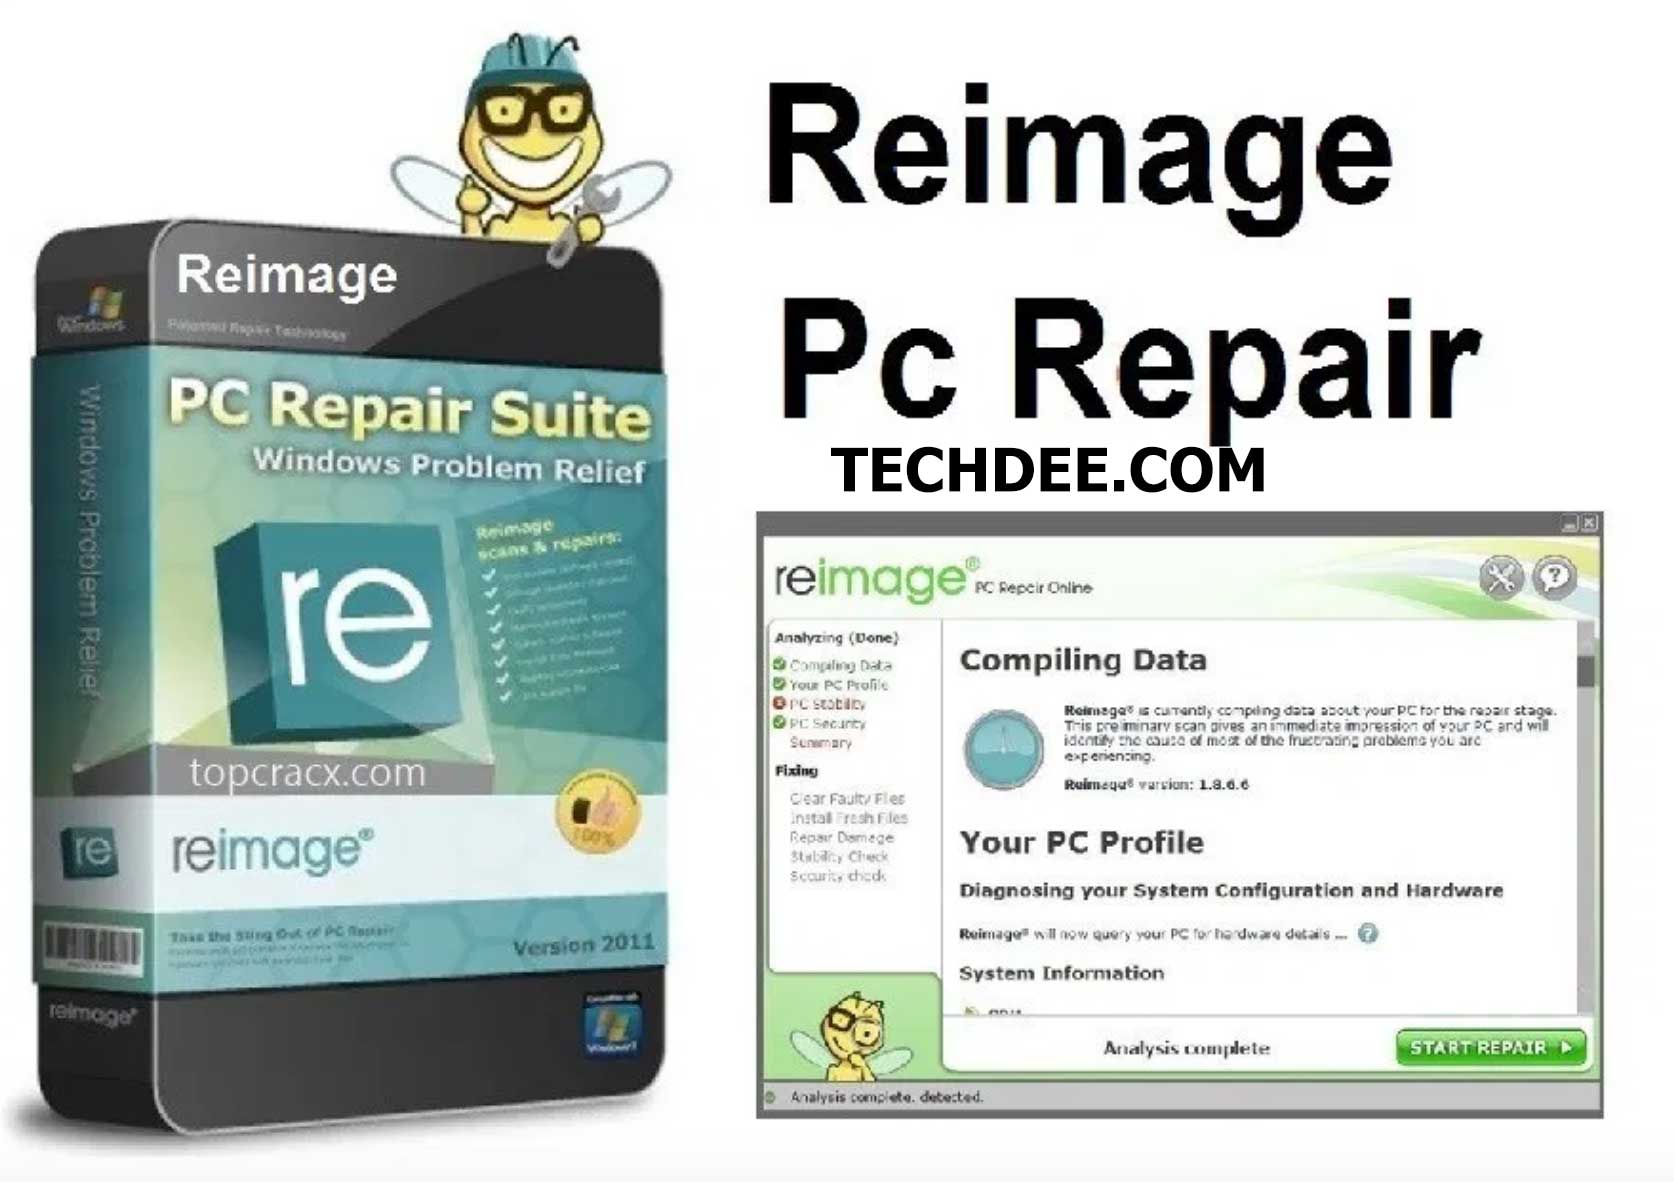 reimage repair tool license key crack